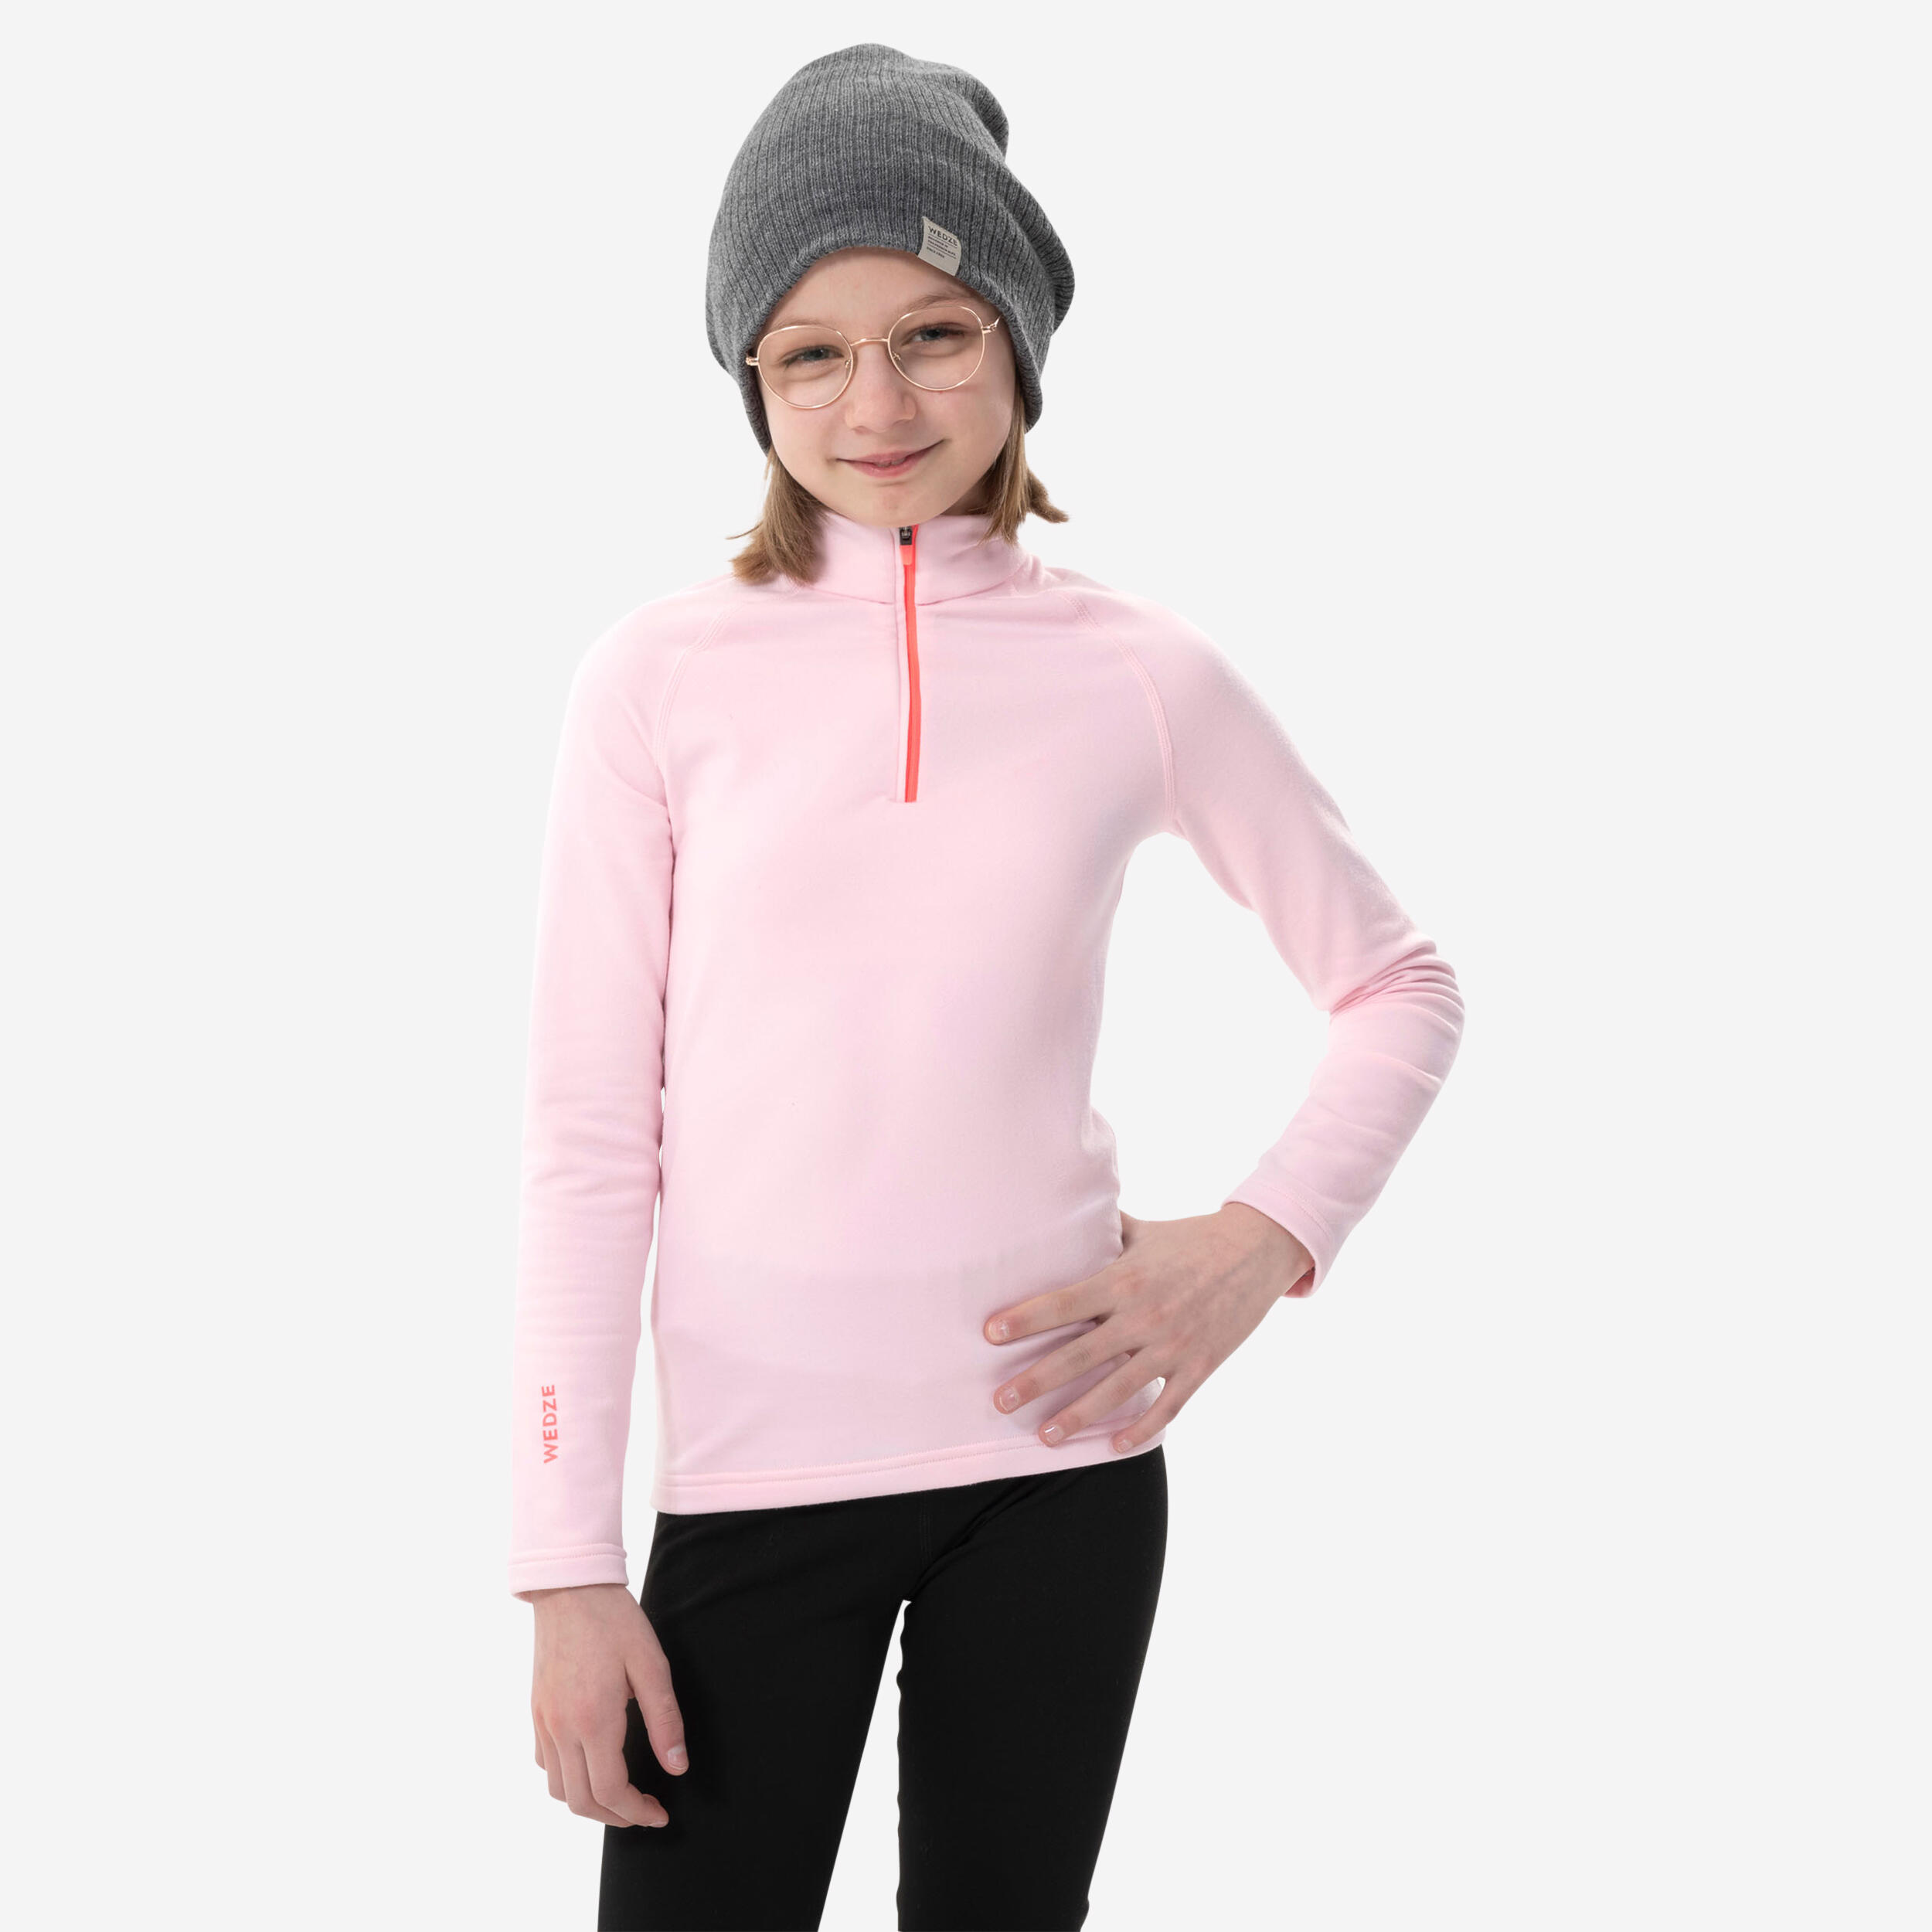 WEDZE Kids’ Ski Base Layer 1/2 Zip Top - BL 500 - Pink